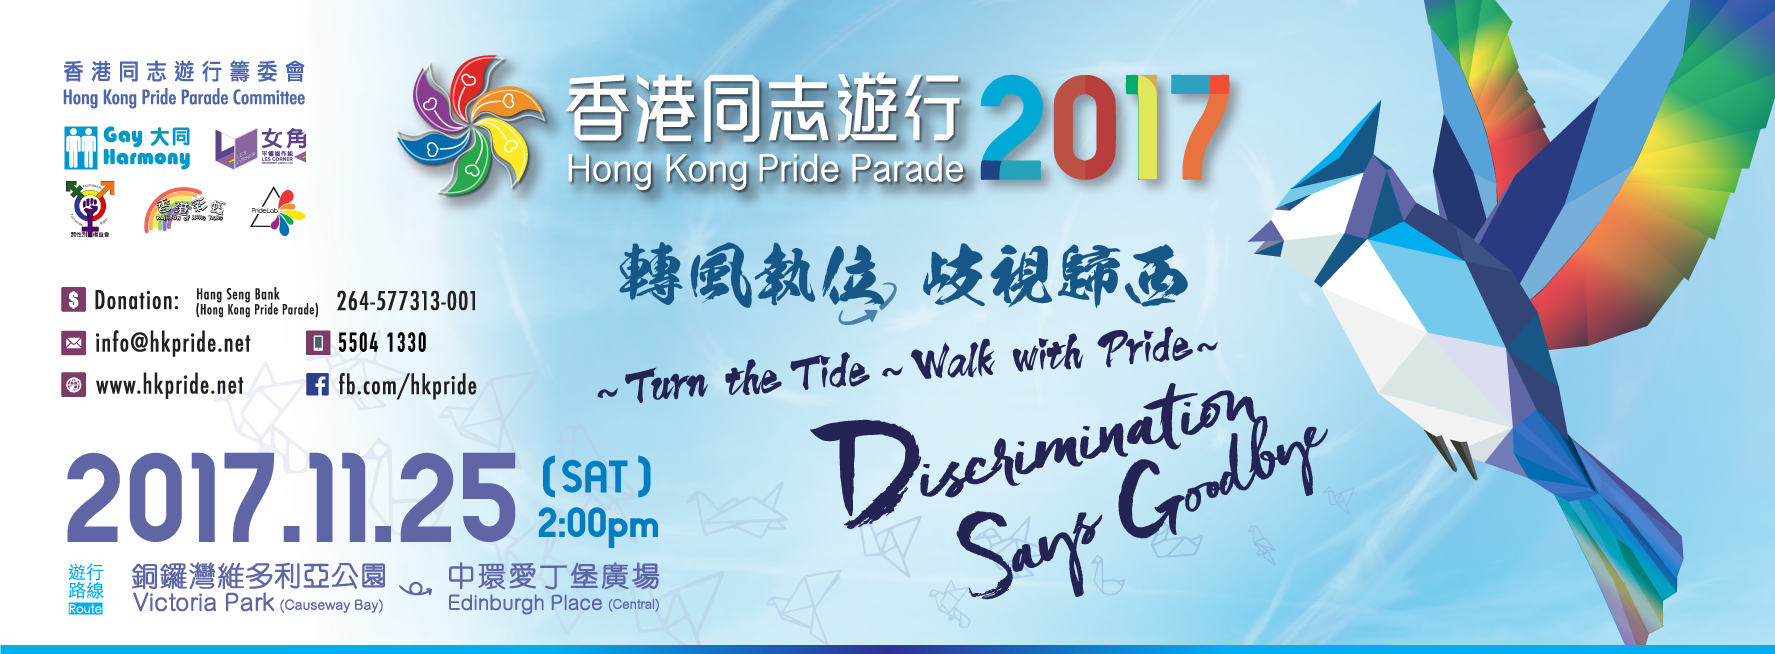 2017香港同志遊行e-banner